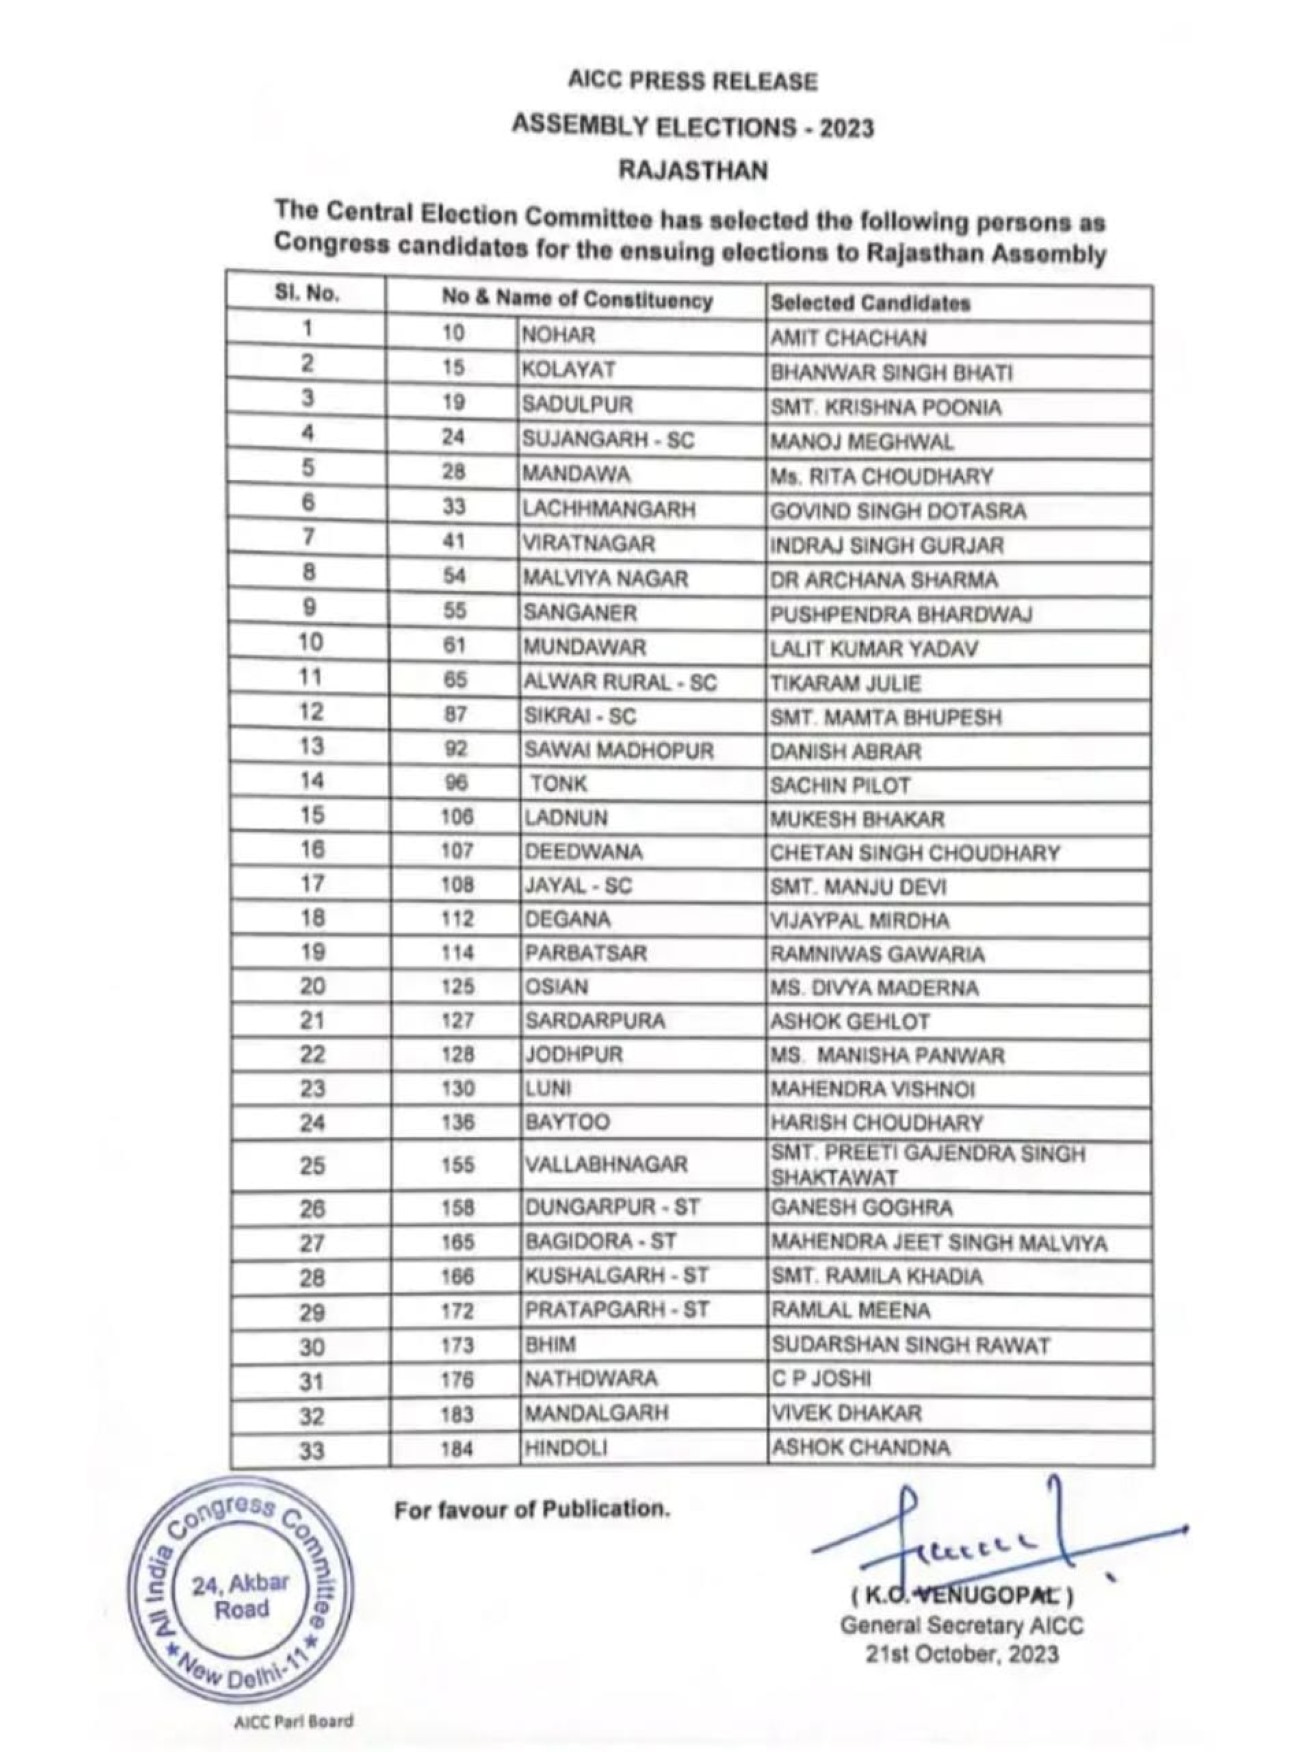 BIG NEWS – राजस्थान में कांग्रेस की उम्मीदवार सूची जारी, 33 कैंडिडेट को दिया टिकट